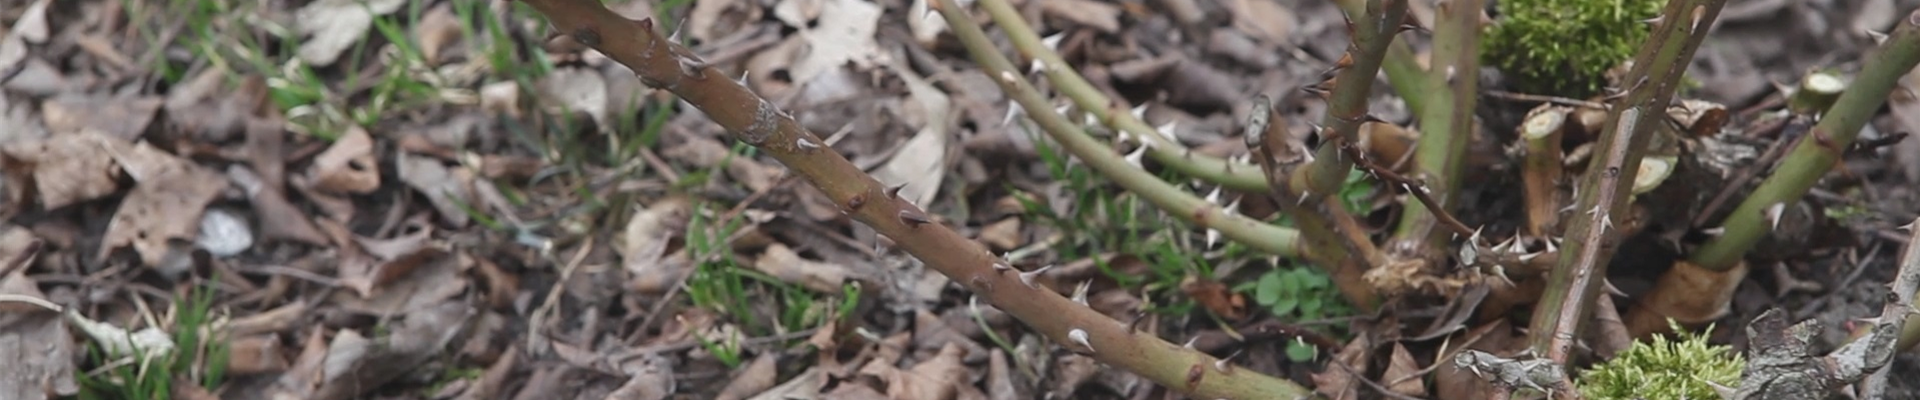 Beetrosen - Zurückschneiden im Frühling (thumbnail)